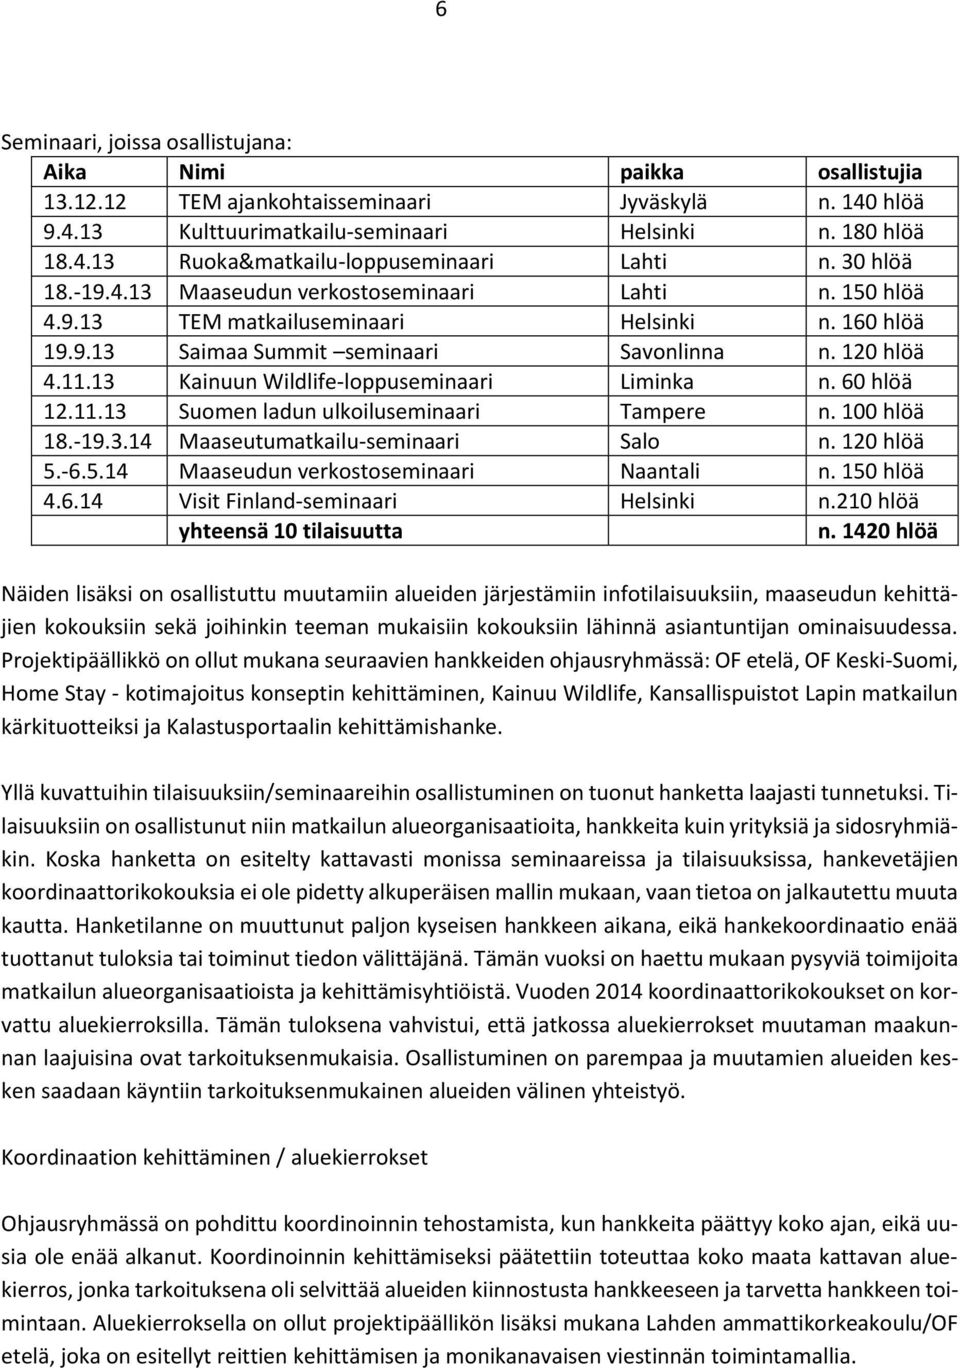 13 Kainuun Wildlife-loppuseminaari Liminka n. 60 hlöä 12.11.13 Suomen ladun ulkoiluseminaari Tampere n. 100 hlöä 18.-19.3.14 Maaseutumatkailu-seminaari Salo n. 120 hlöä 5.